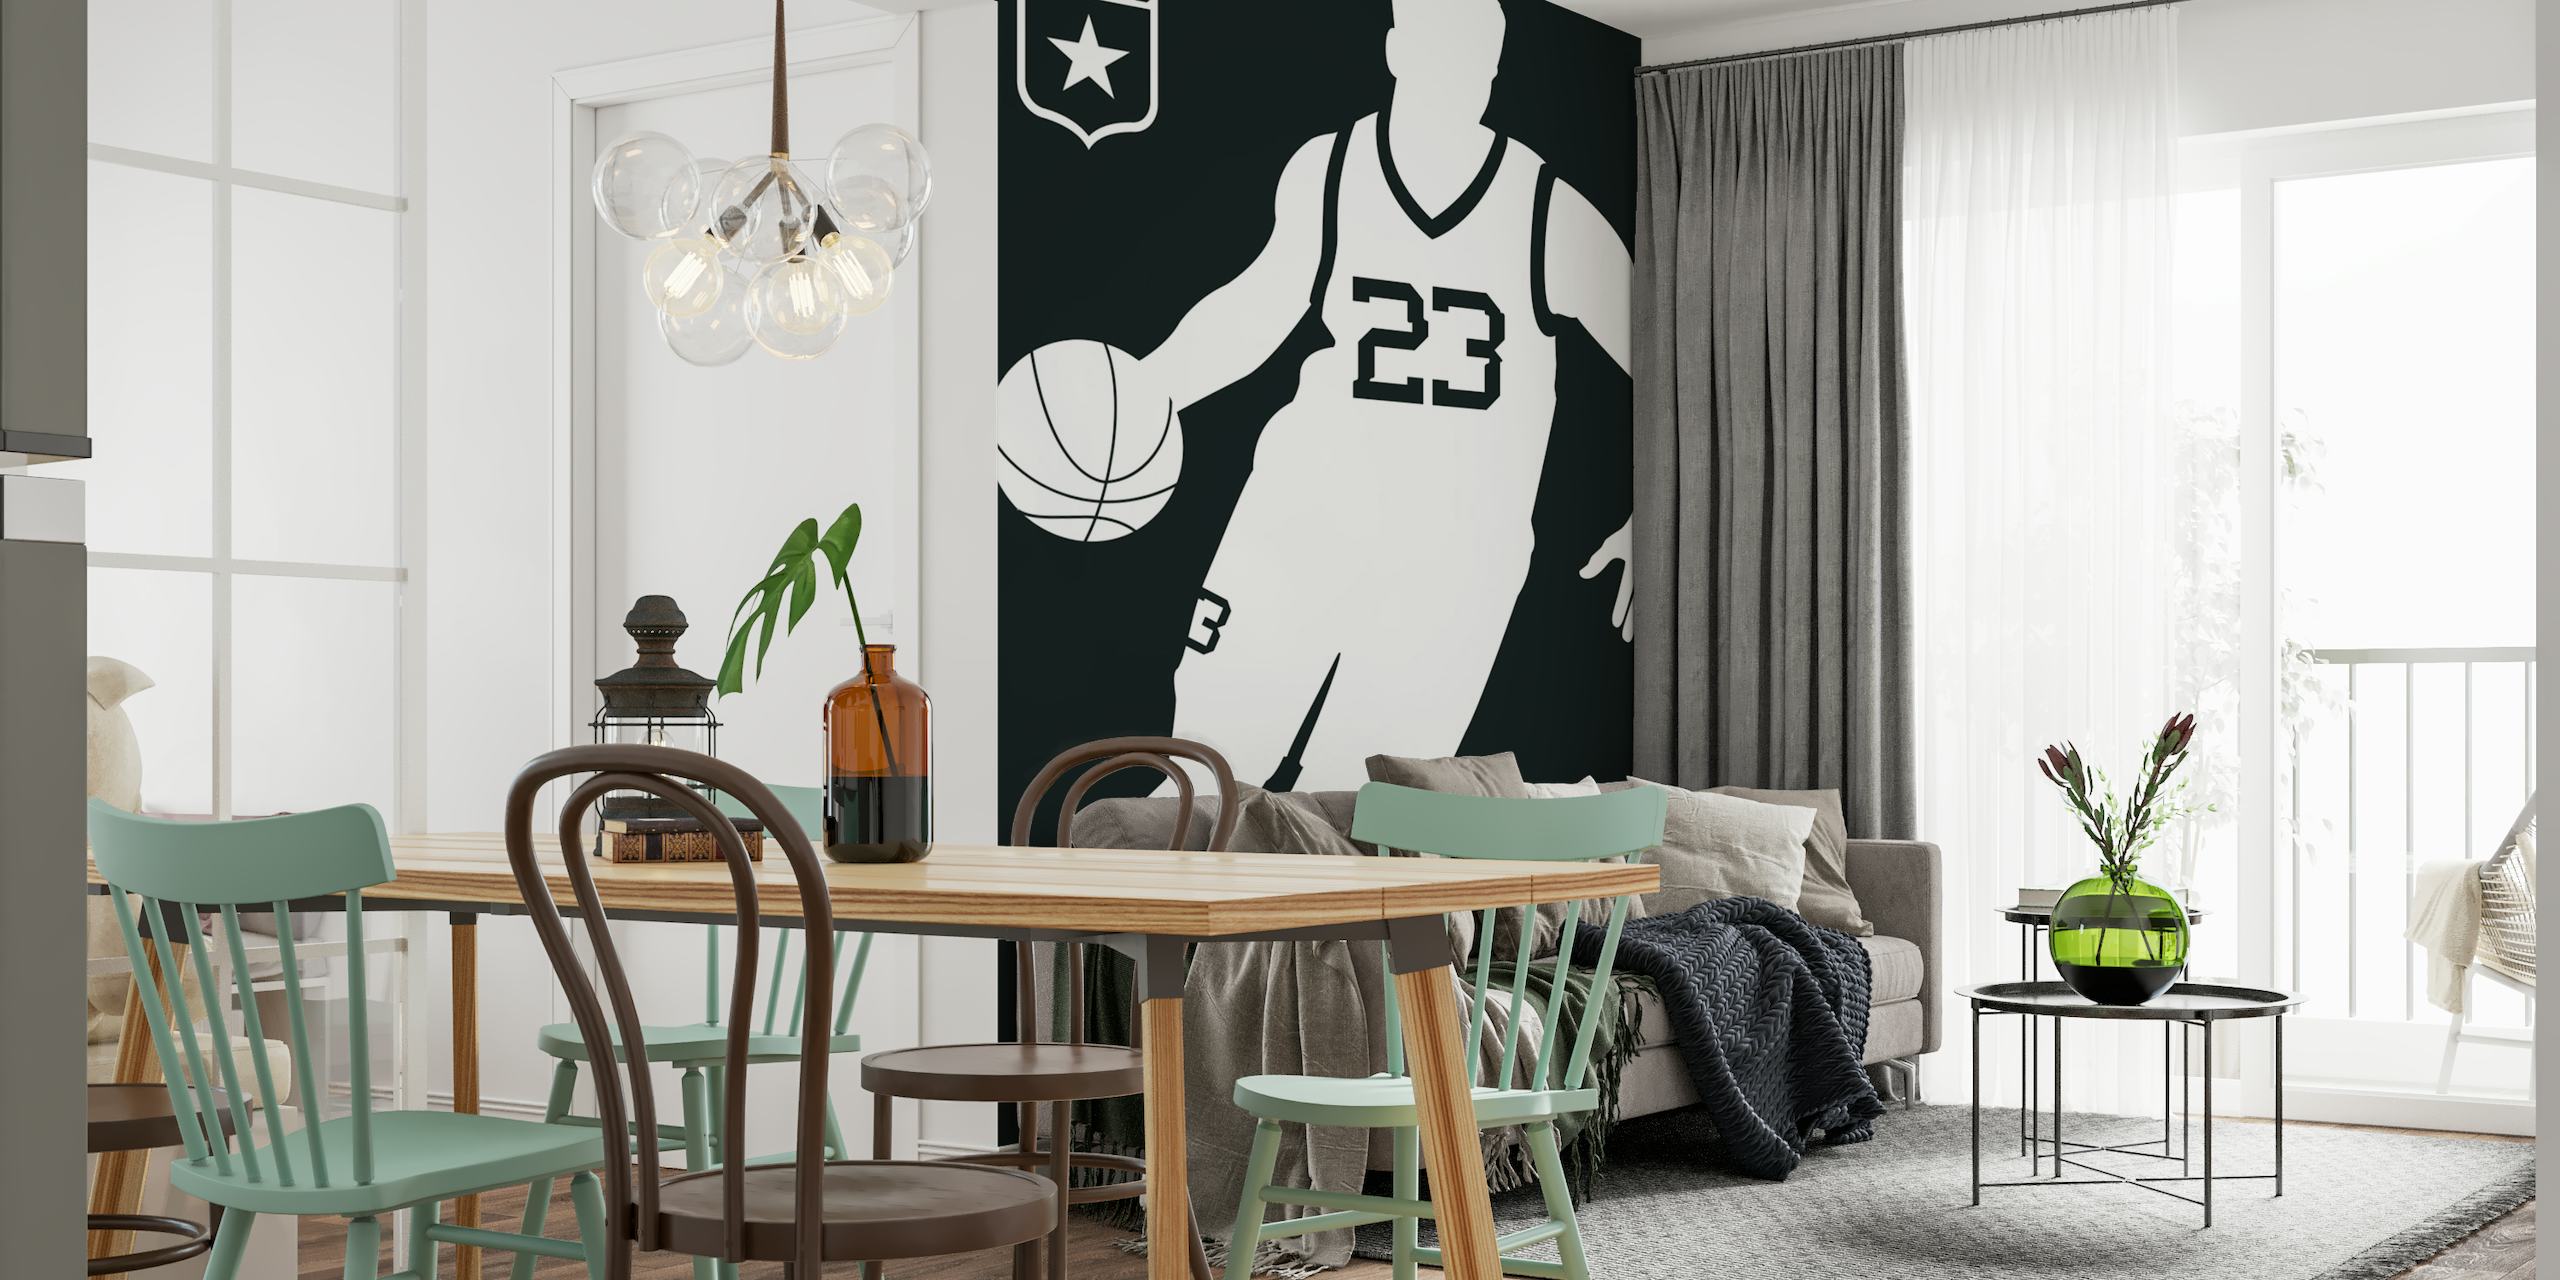 Basketball Black papel pintado